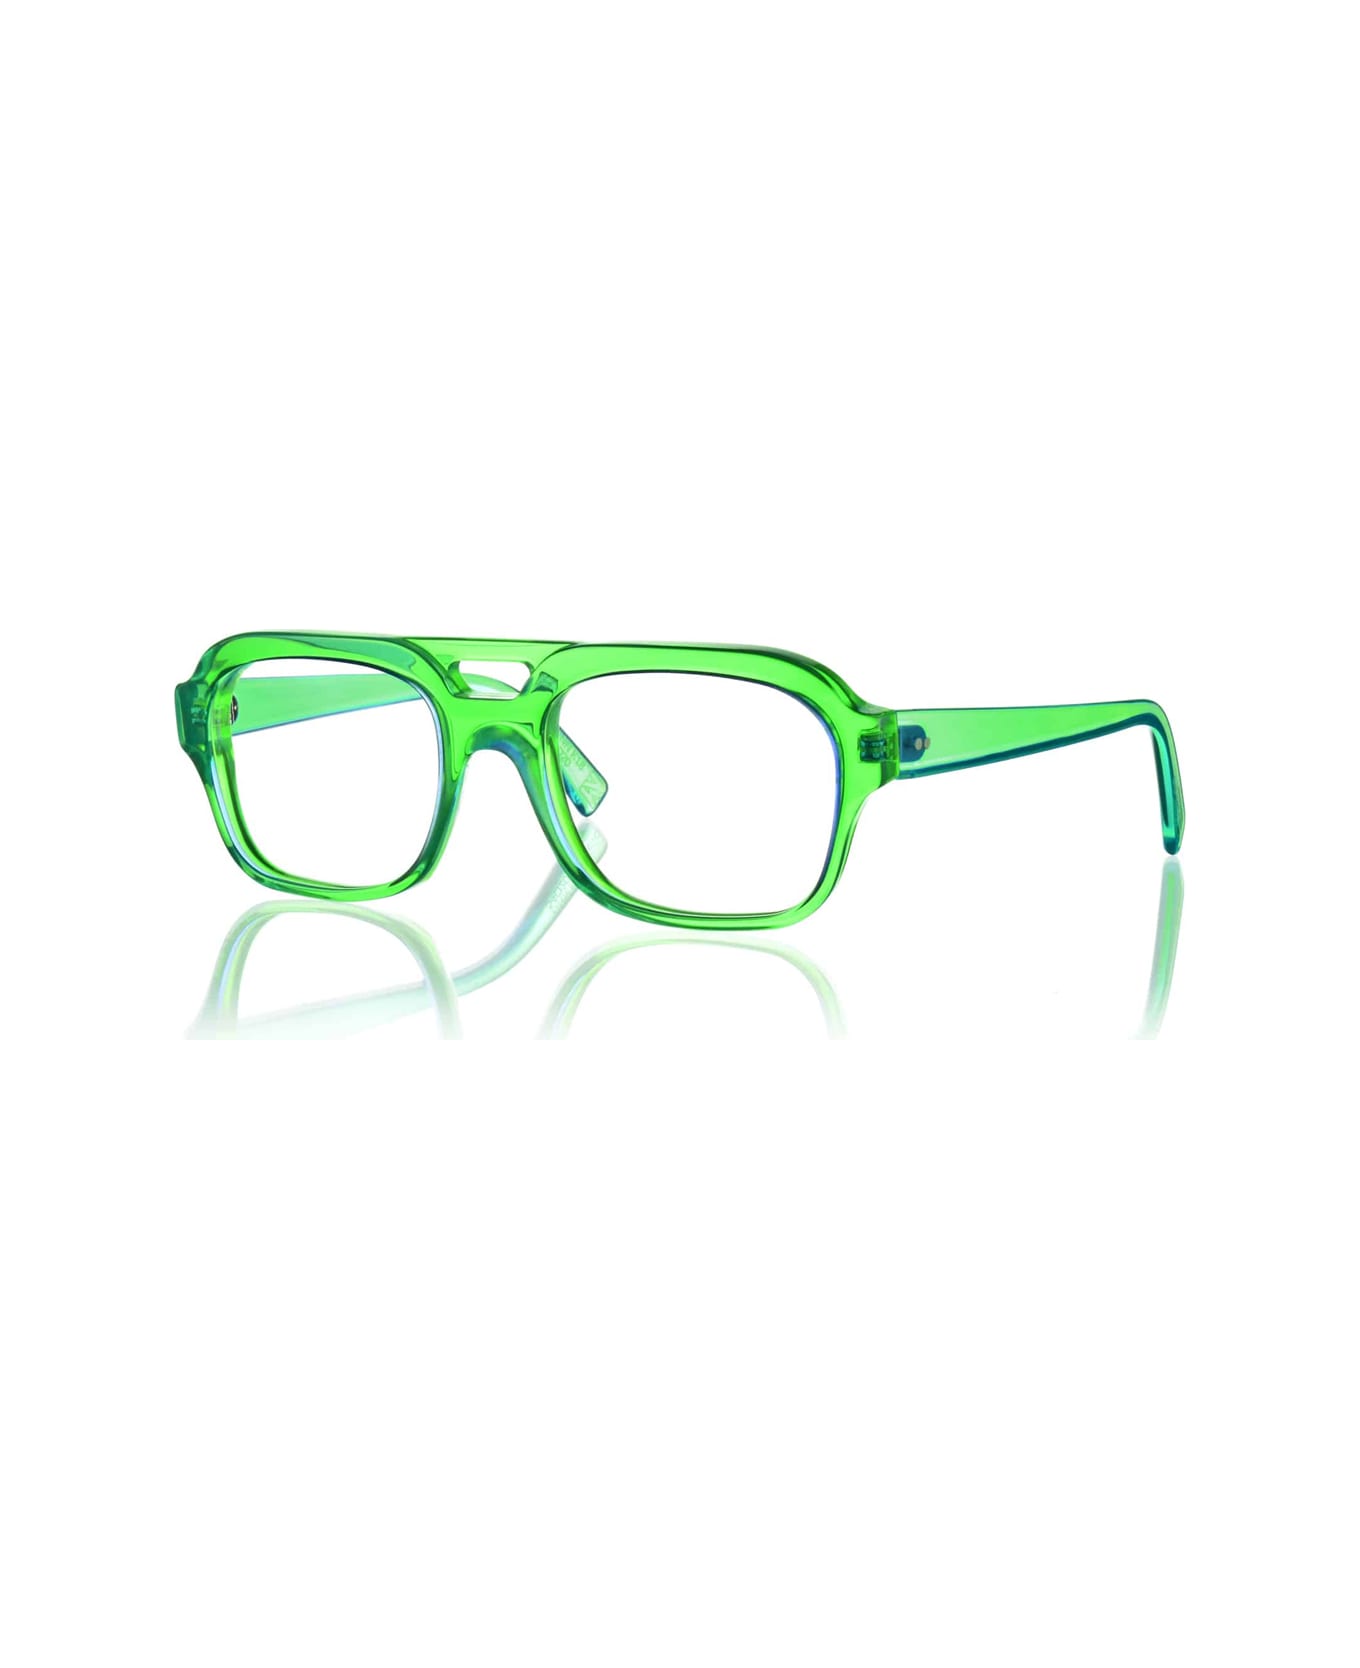 Kirk & Kirk Finn K18 Apple Glasses - Verde